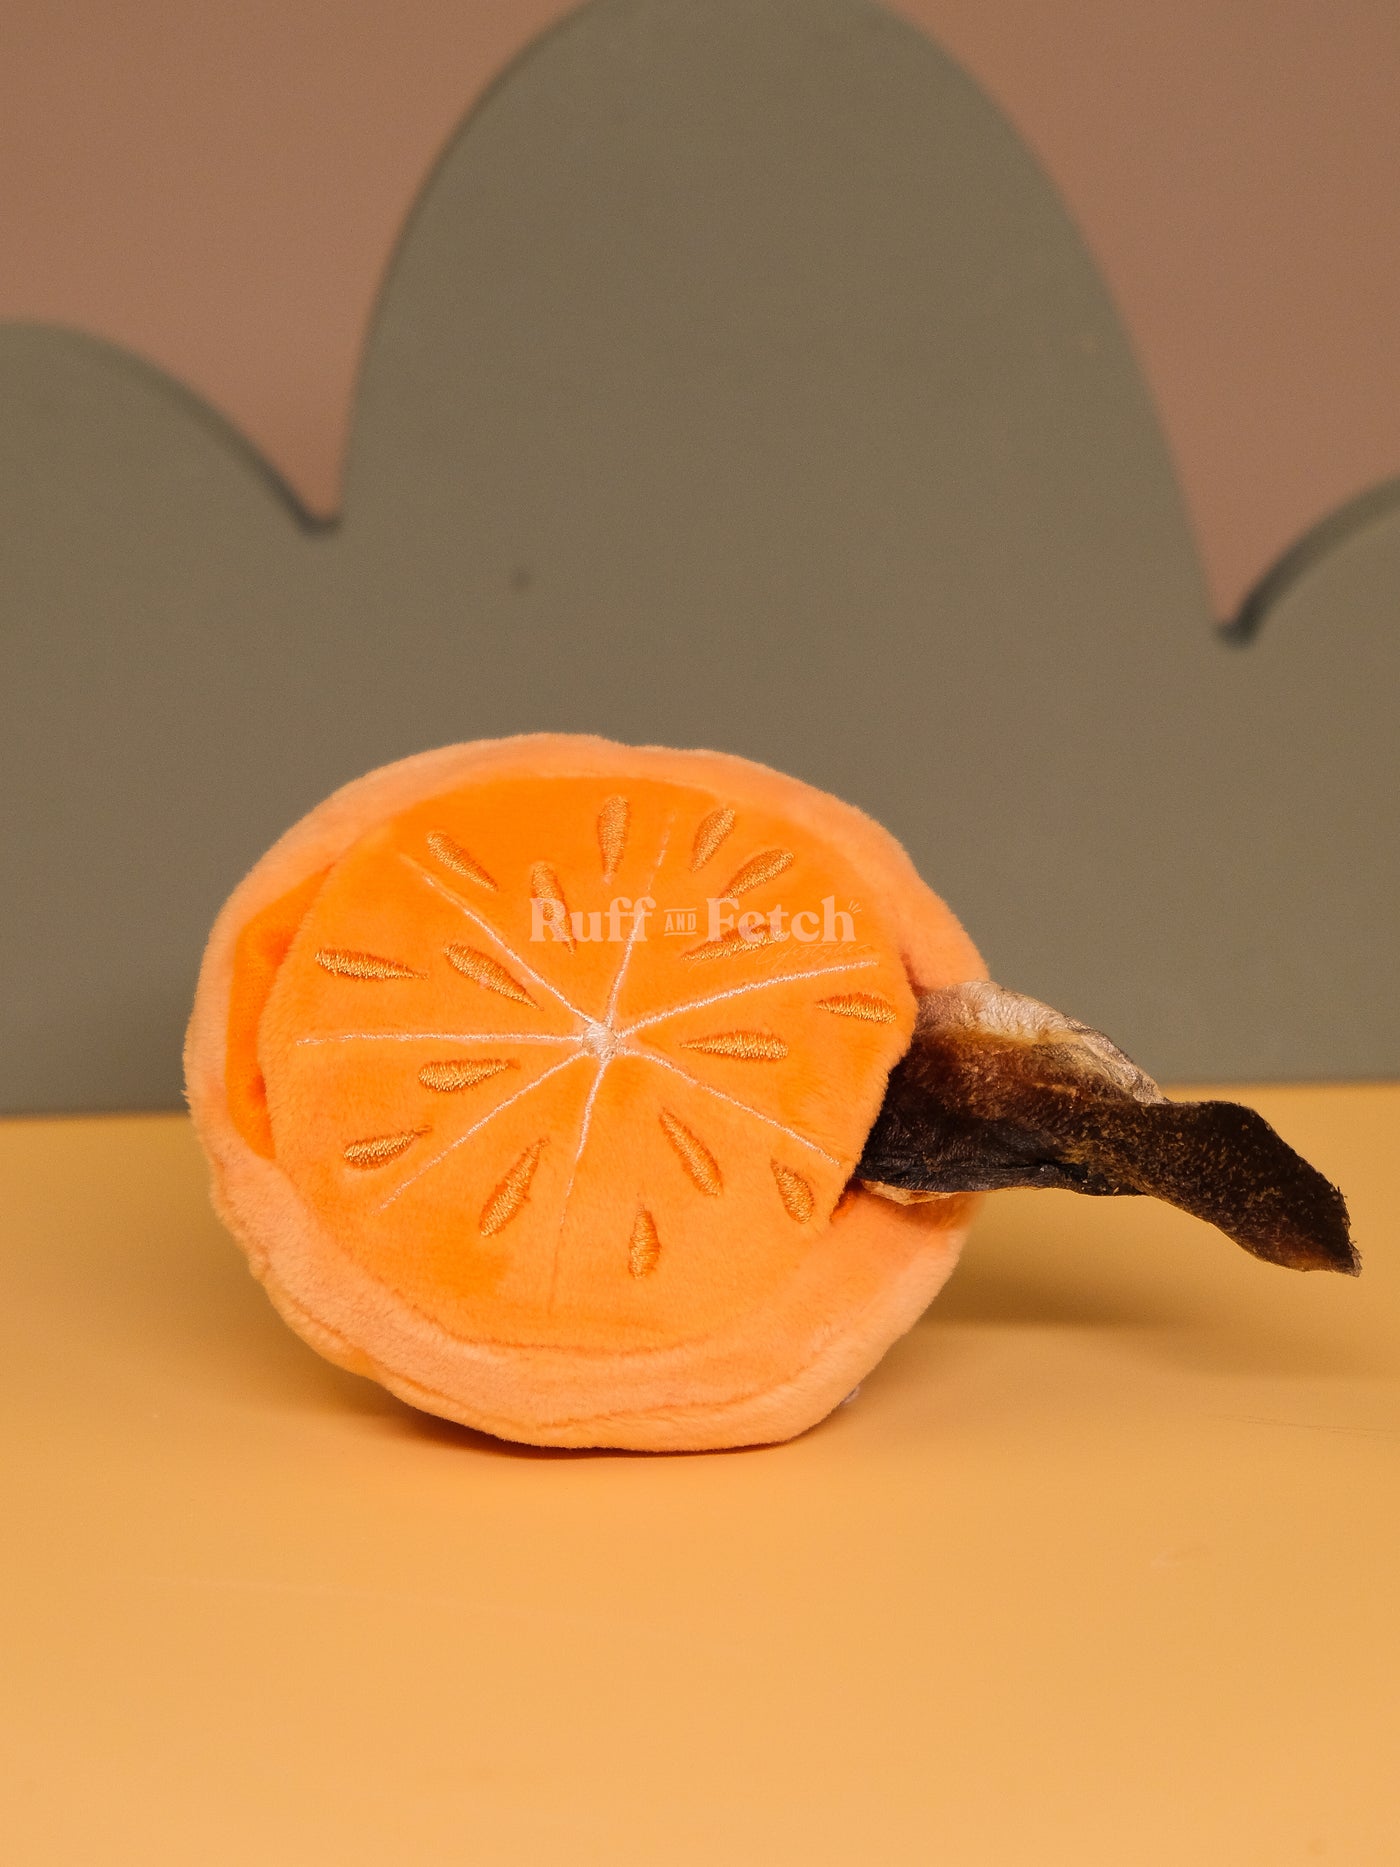 Howlpot | 半邊橙嗅覺訓練玩具